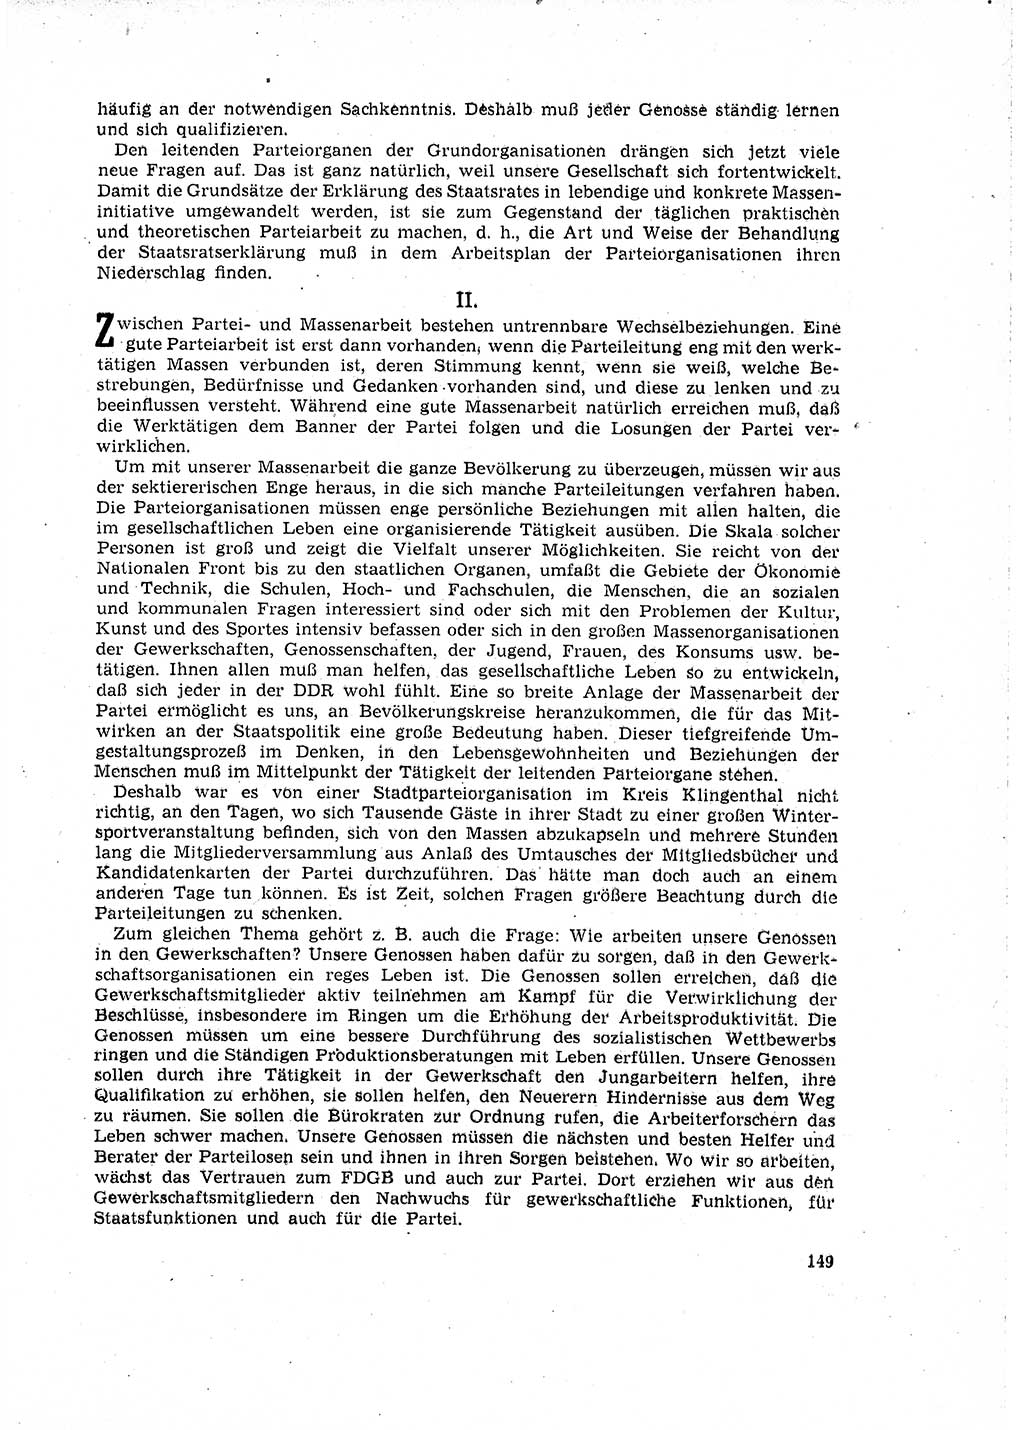 Neuer Weg (NW), Organ des Zentralkomitees (ZK) der SED (Sozialistische Einheitspartei Deutschlands) für Fragen des Parteilebens, 16. Jahrgang [Deutsche Demokratische Republik (DDR)] 1961, Seite 149 (NW ZK SED DDR 1961, S. 149)